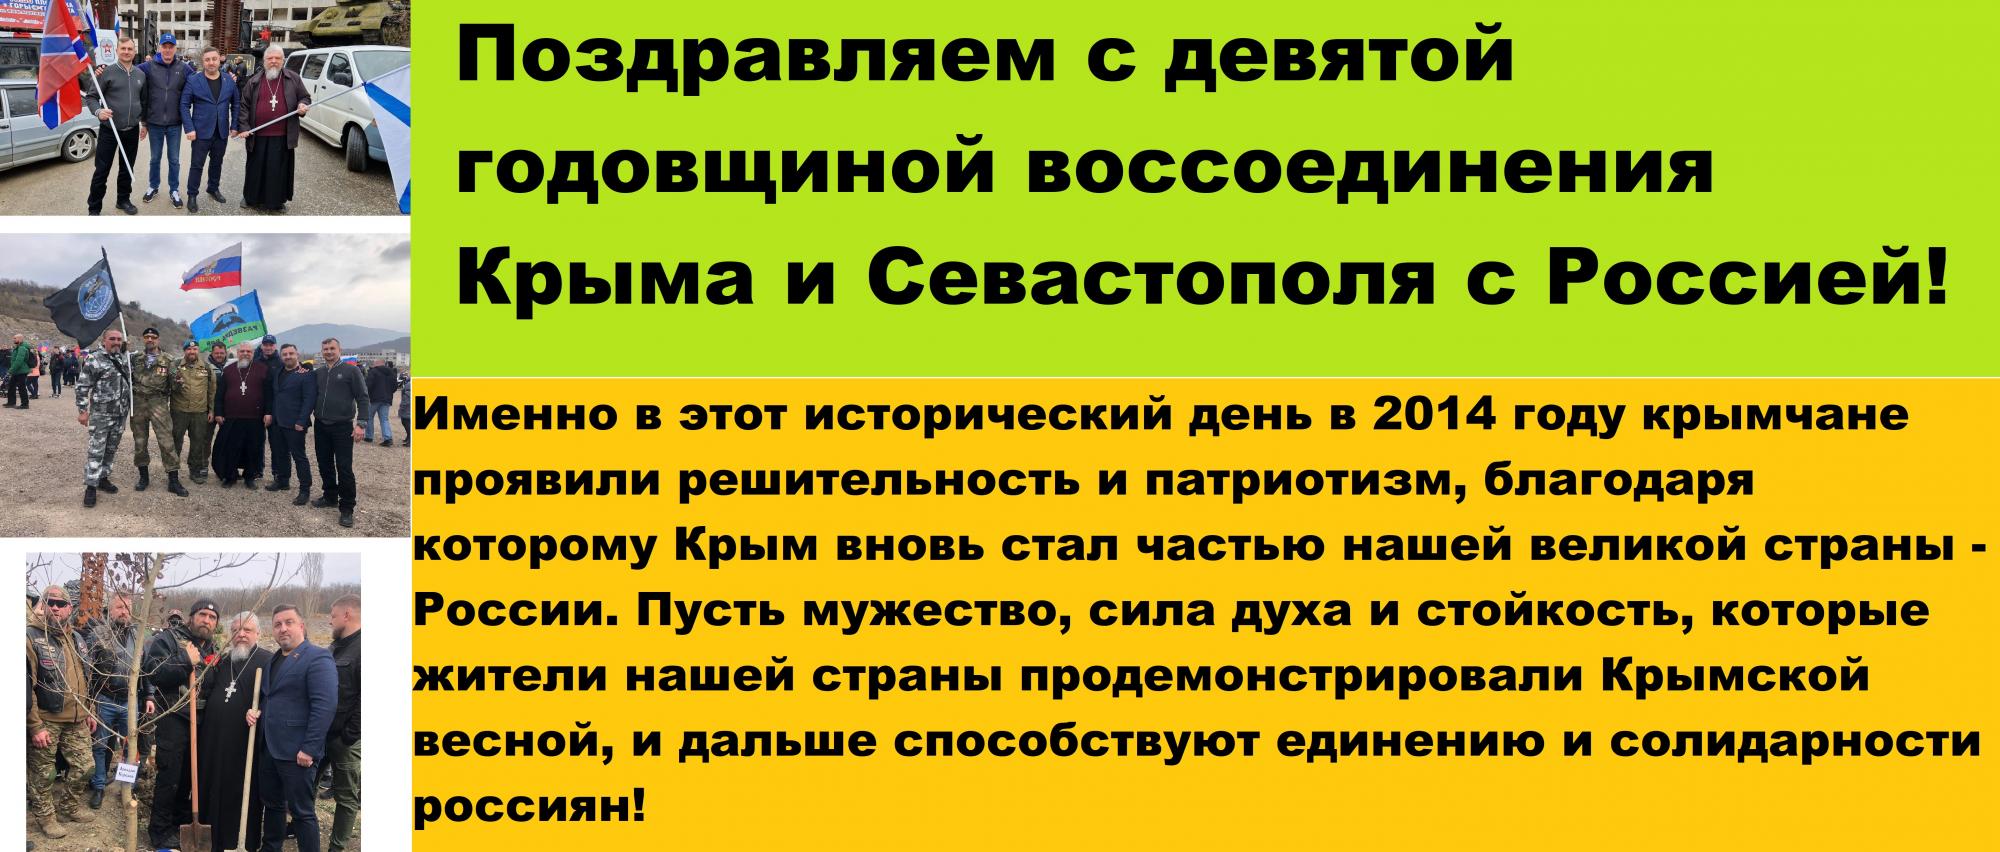 С девятой годовщиной воссоединения Крыма и Севастополя с Россией!